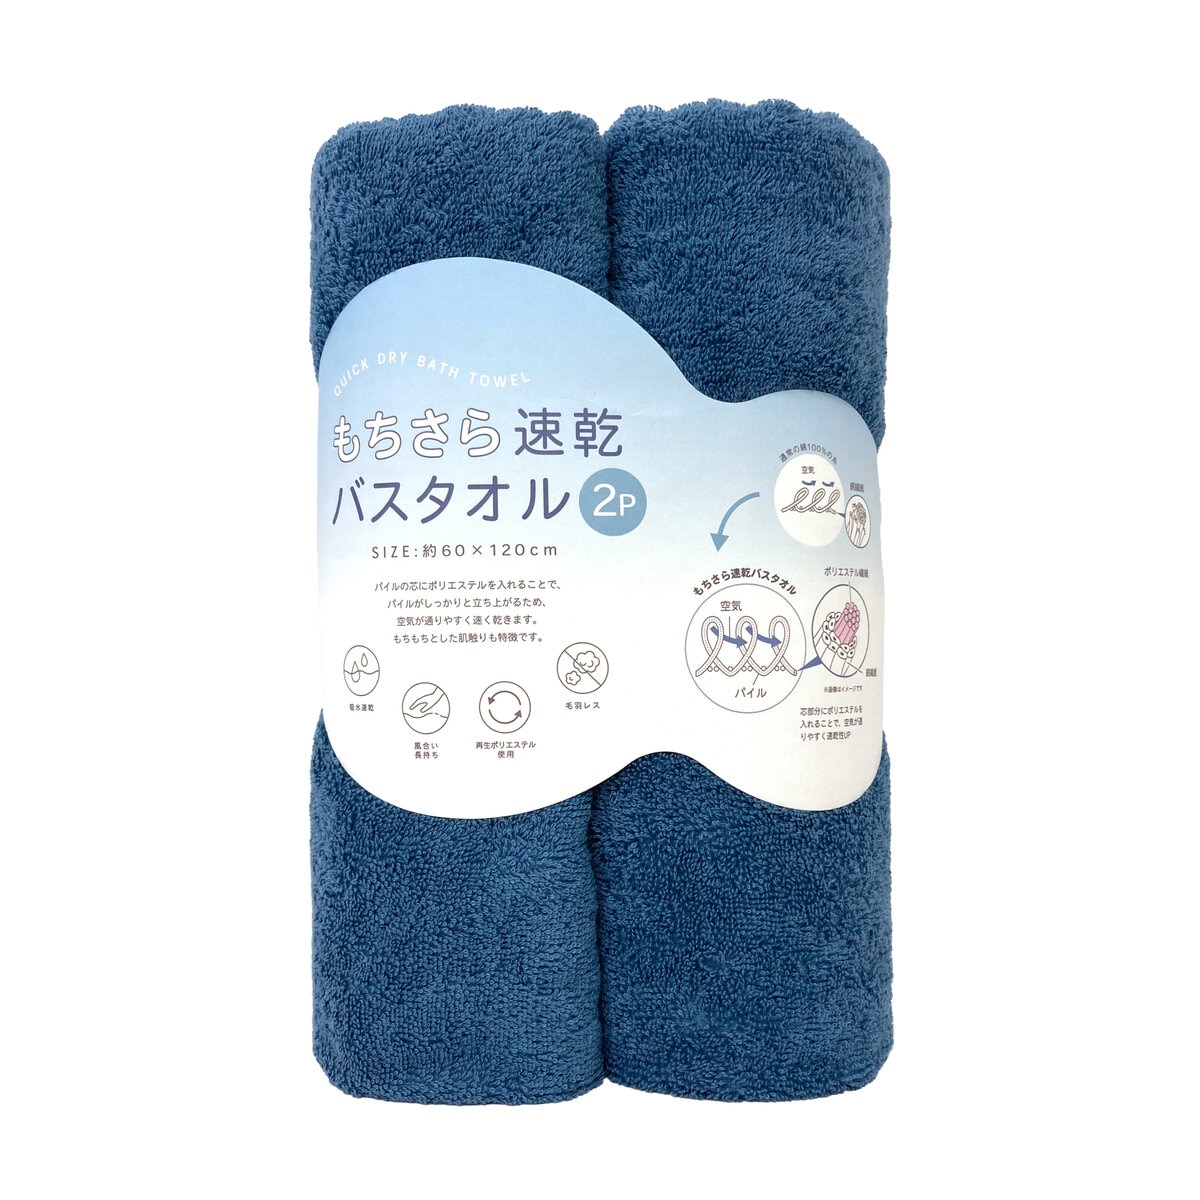 もちさら 速乾バスタオル 60cm x 120cm 2枚セット スモークブルー | Costco Japan